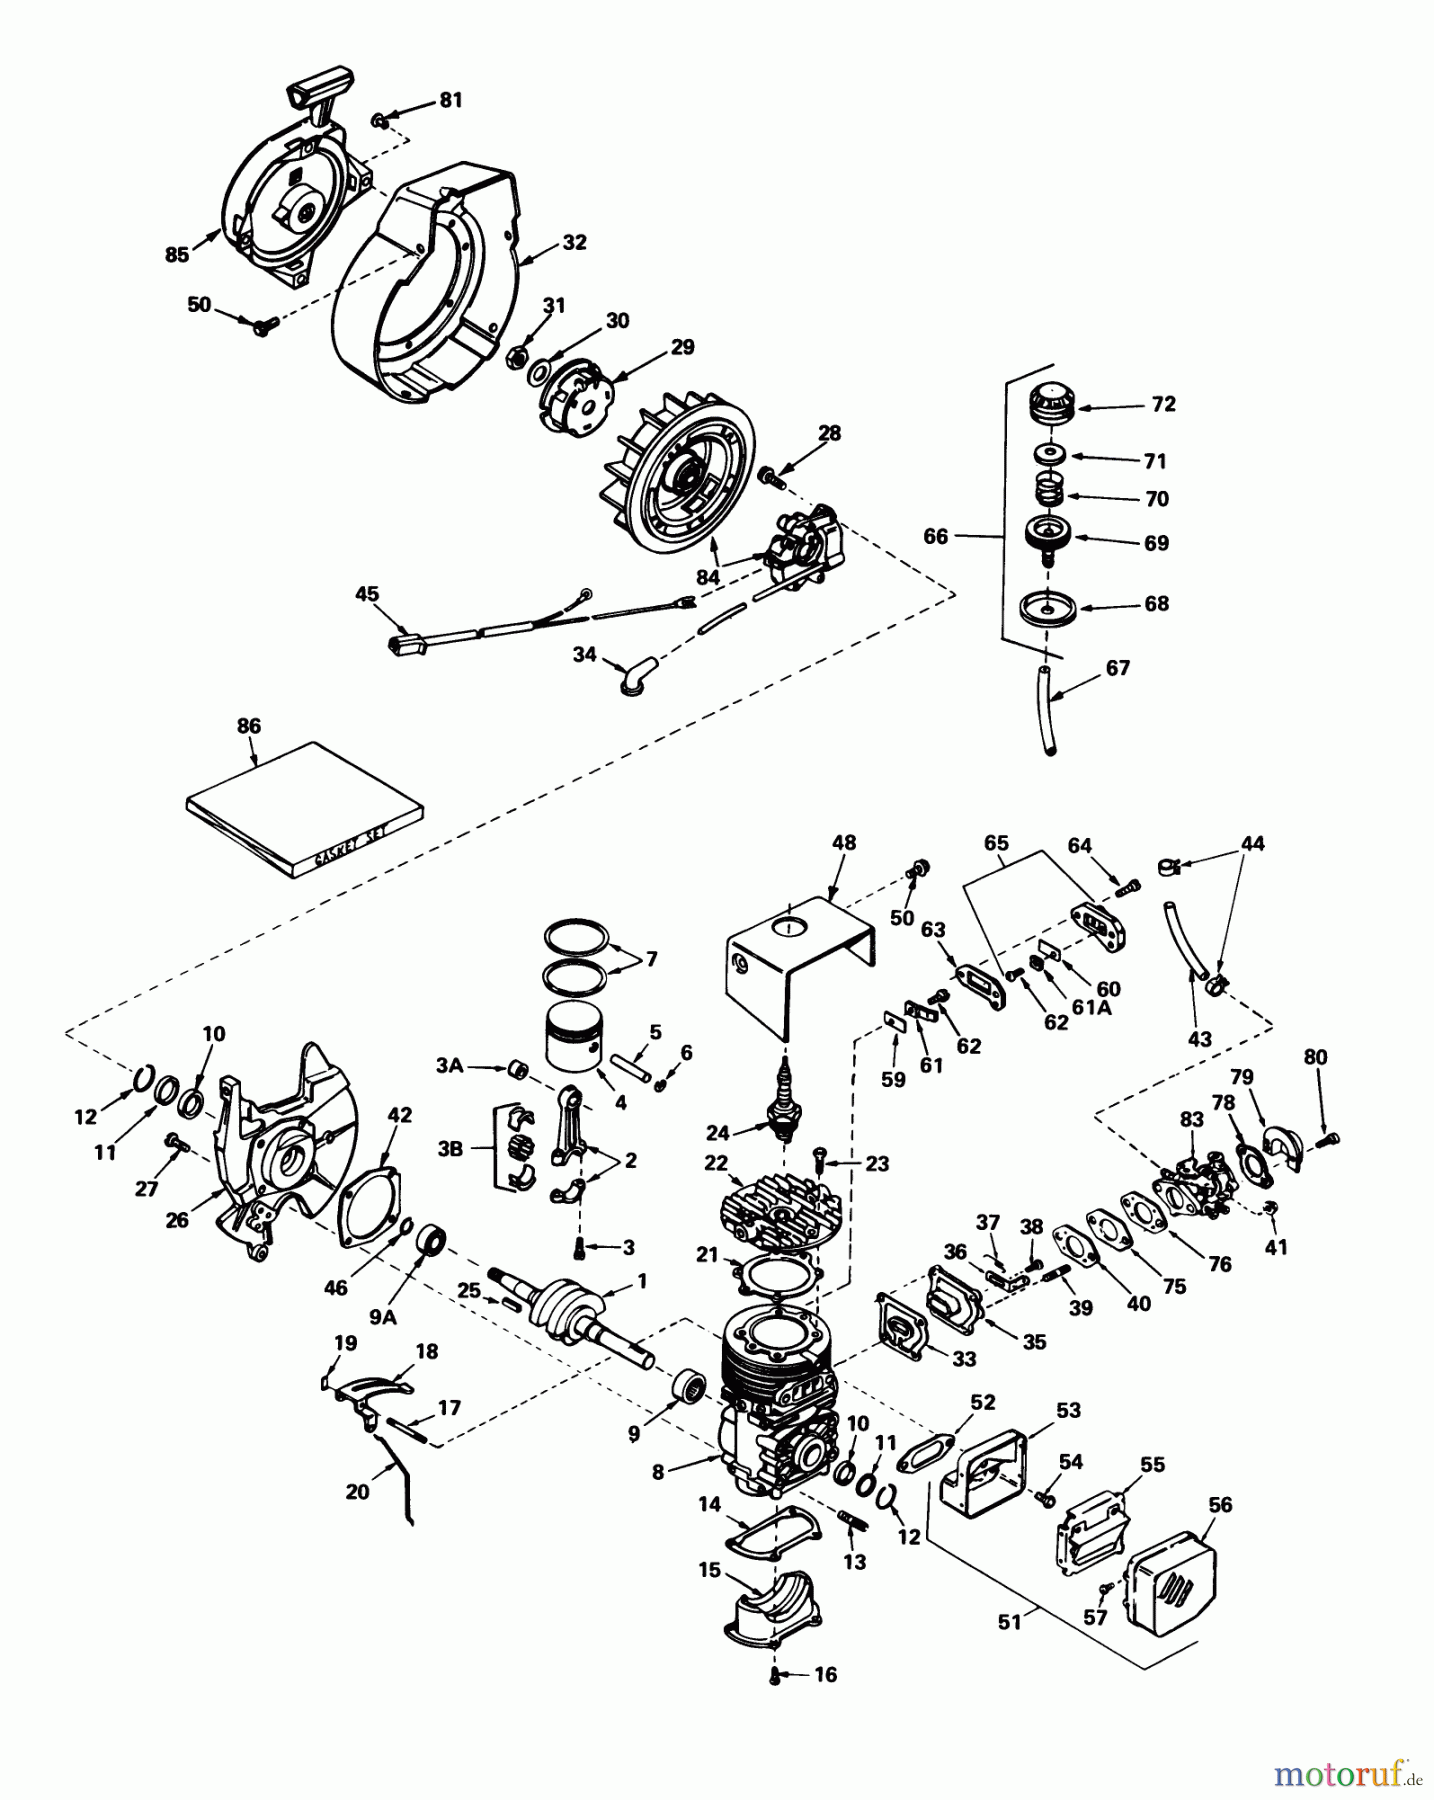  Toro Neu Snow Blowers/Snow Throwers Seite 1 38014 - Toro Snow Master 14, 1978 (8000001-8999999) ENGINE TECUMSEH MODEL NO. AH520 TYPE 1584